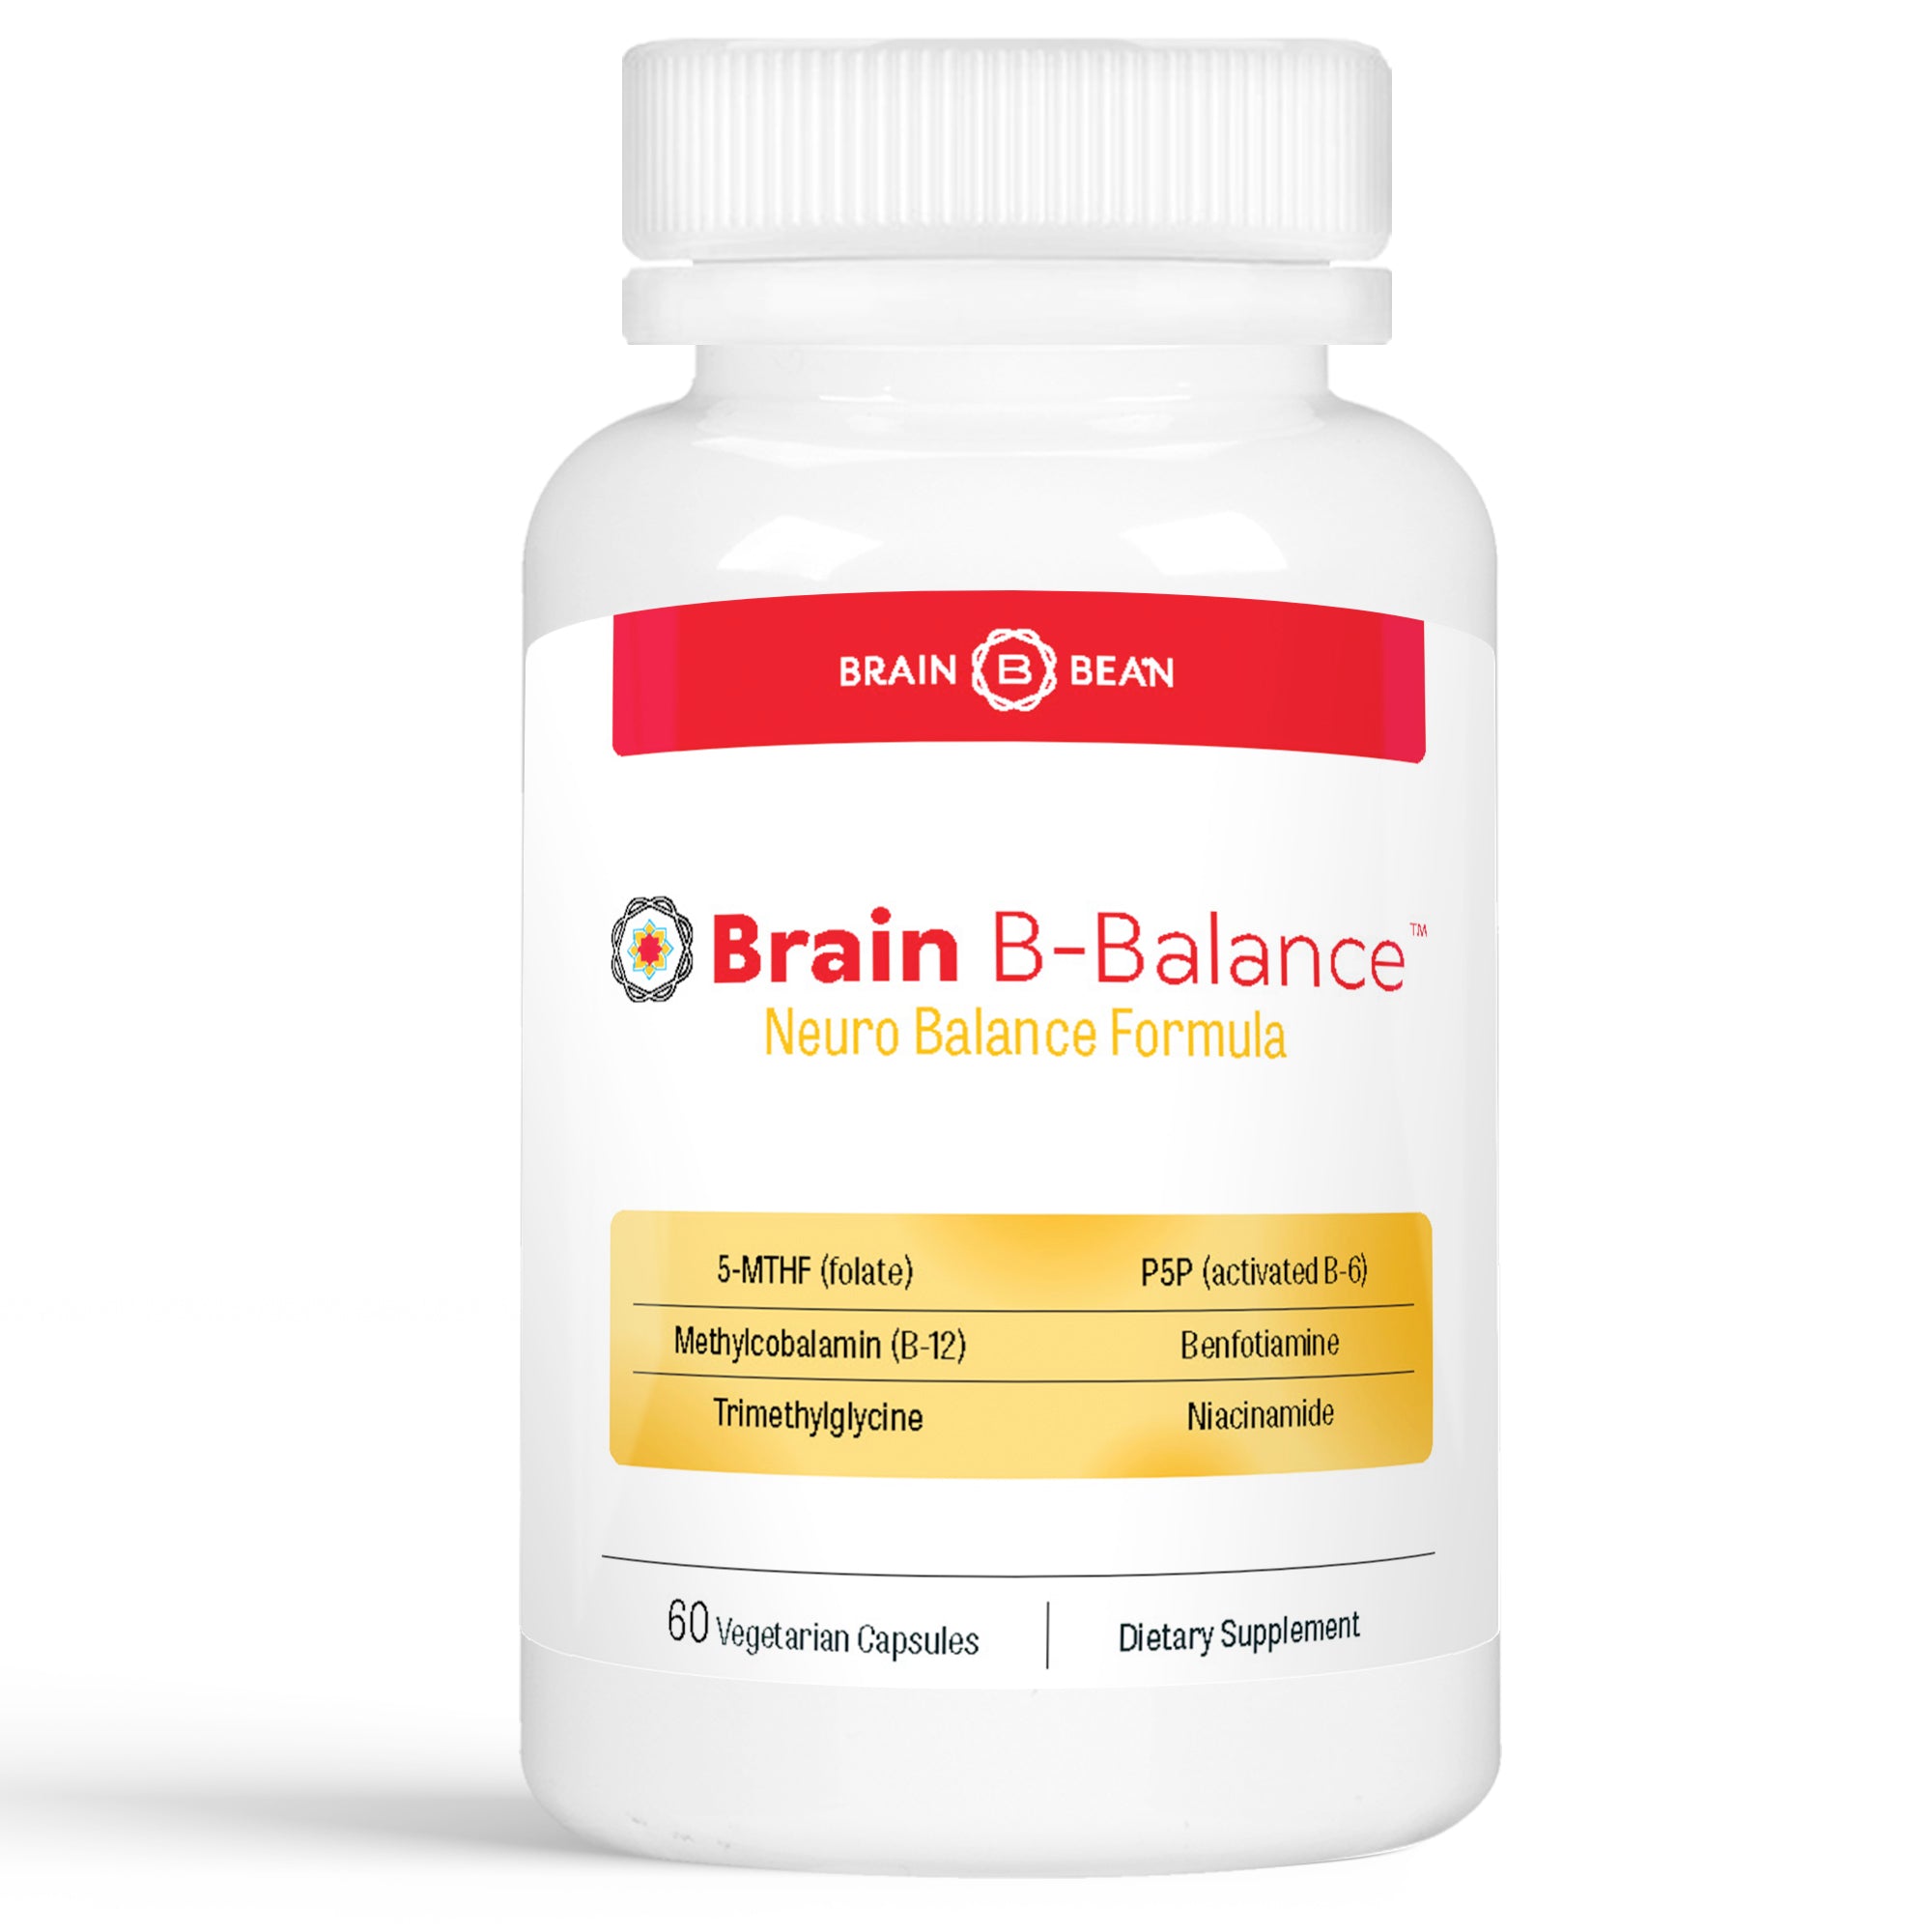 Brain B-Balance